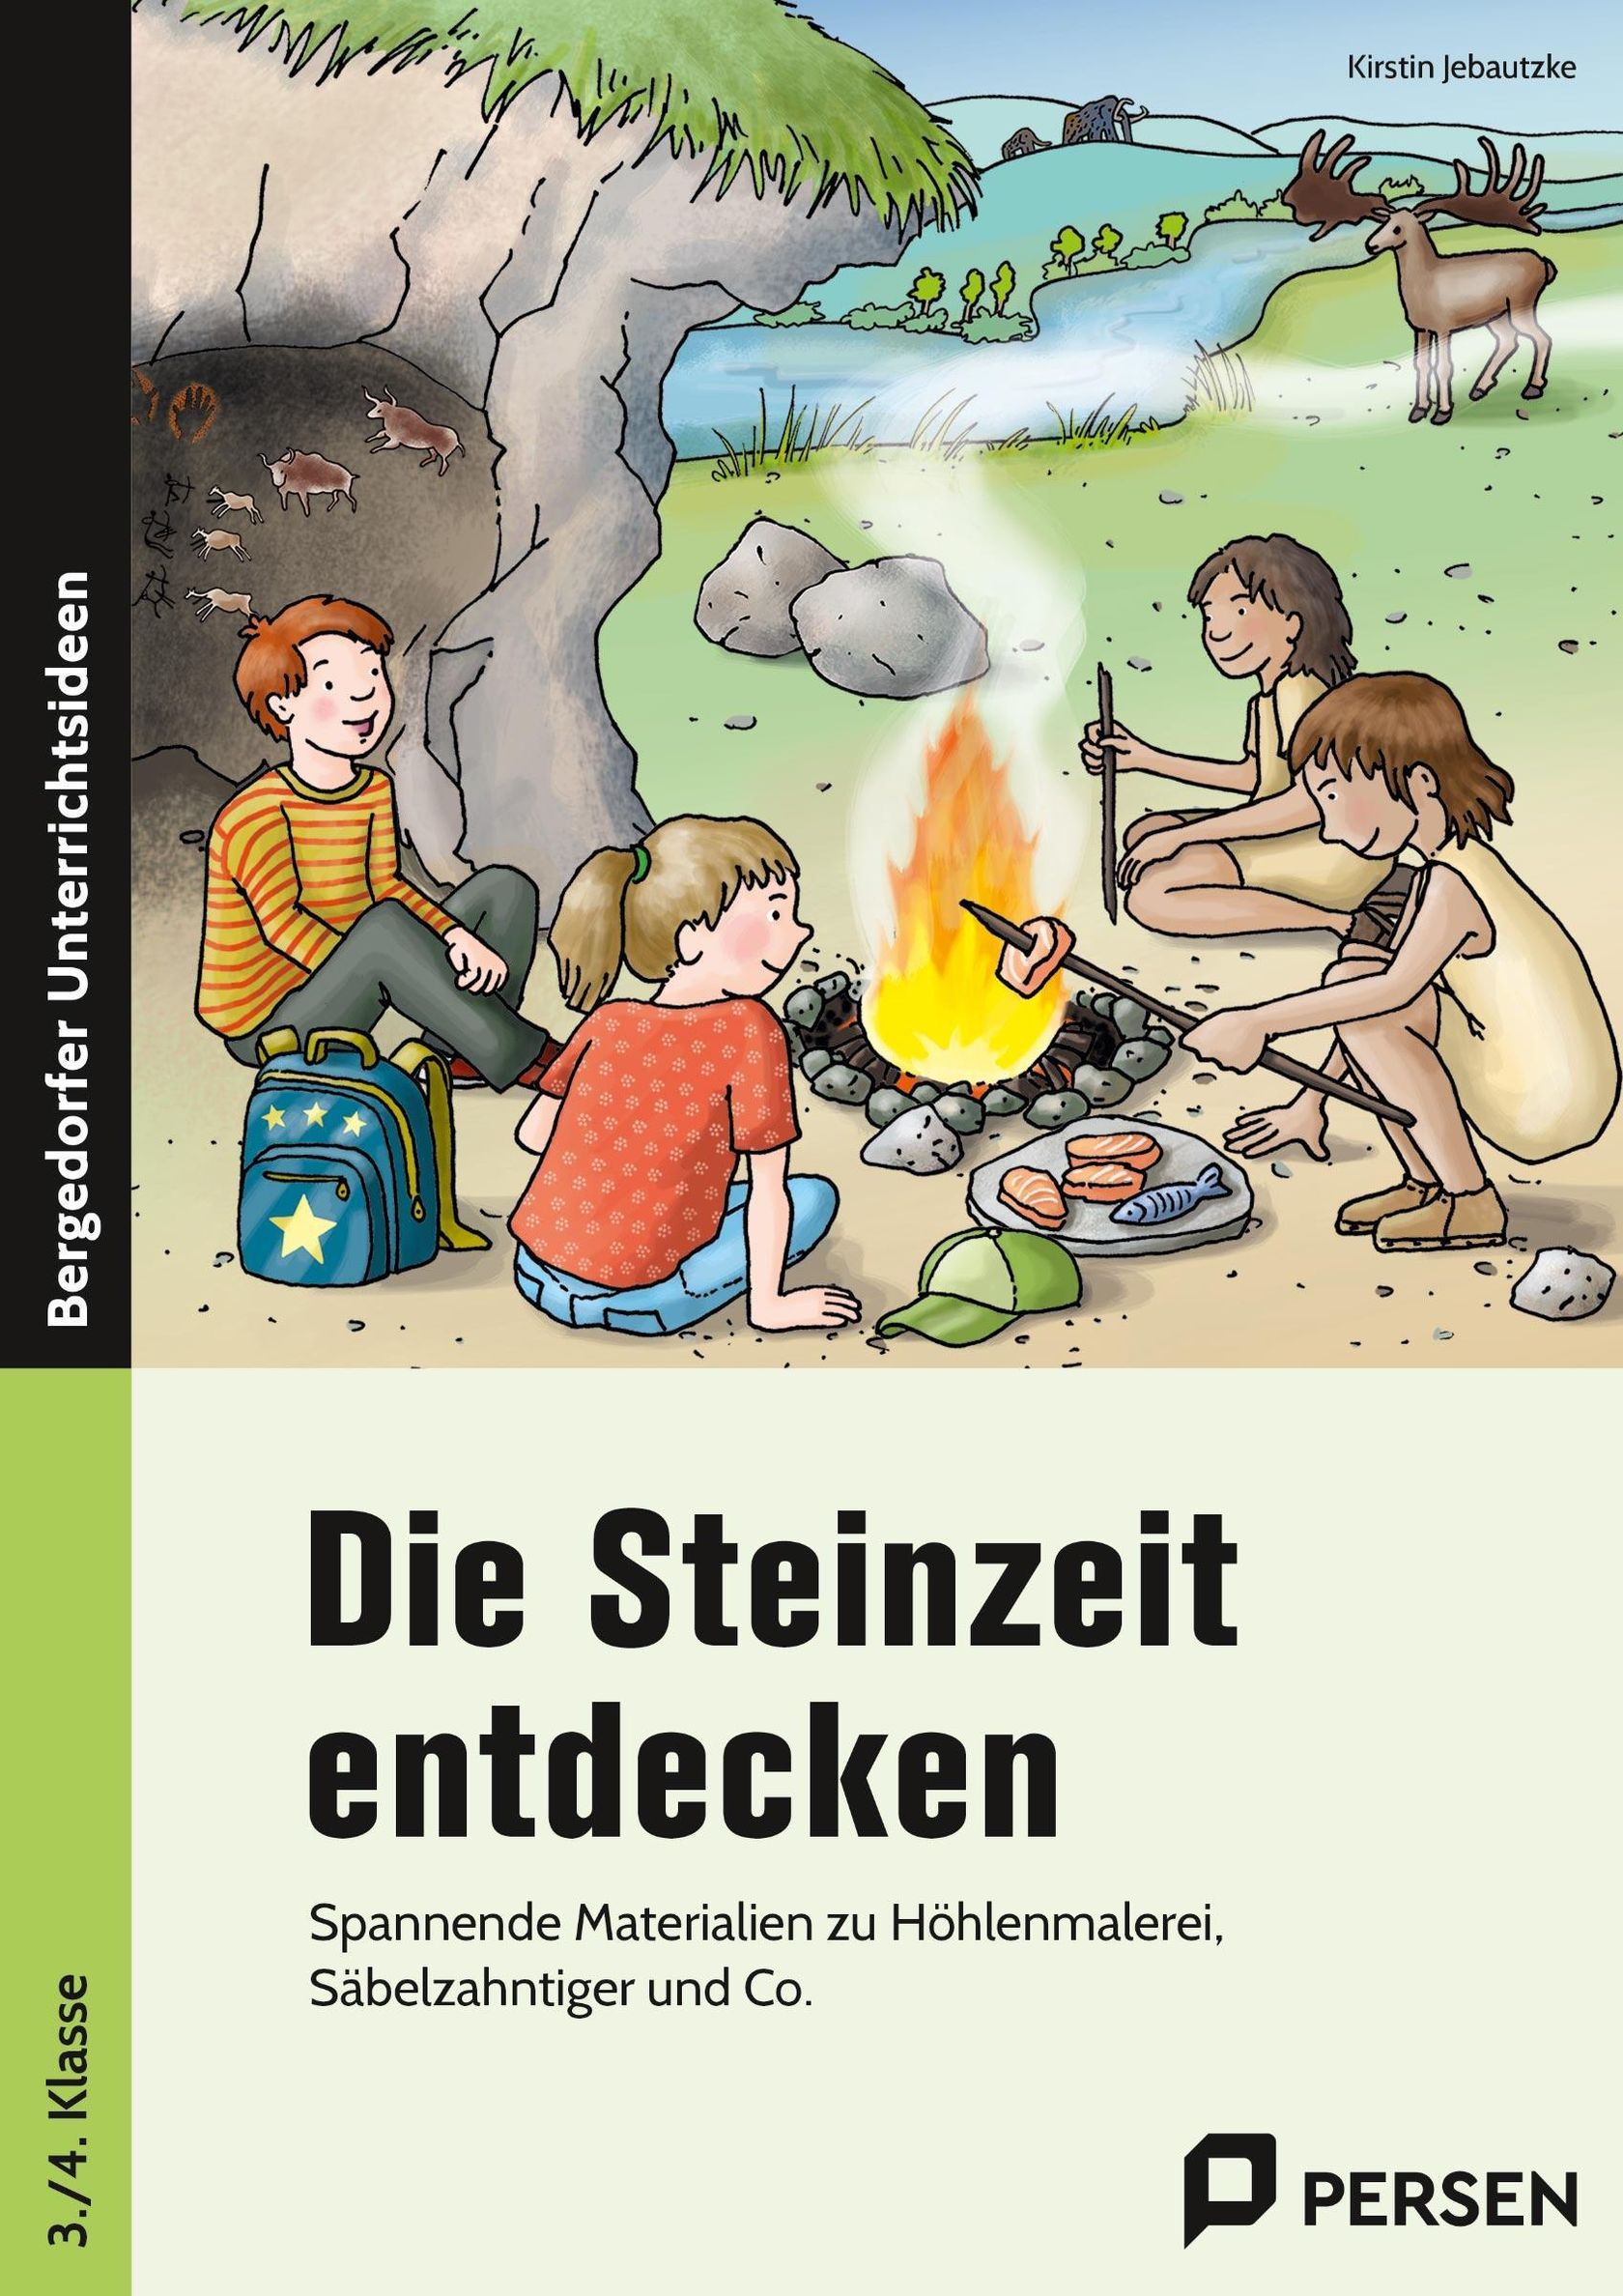 Die Steinzeit entdecken kaufen | tausendkind.de